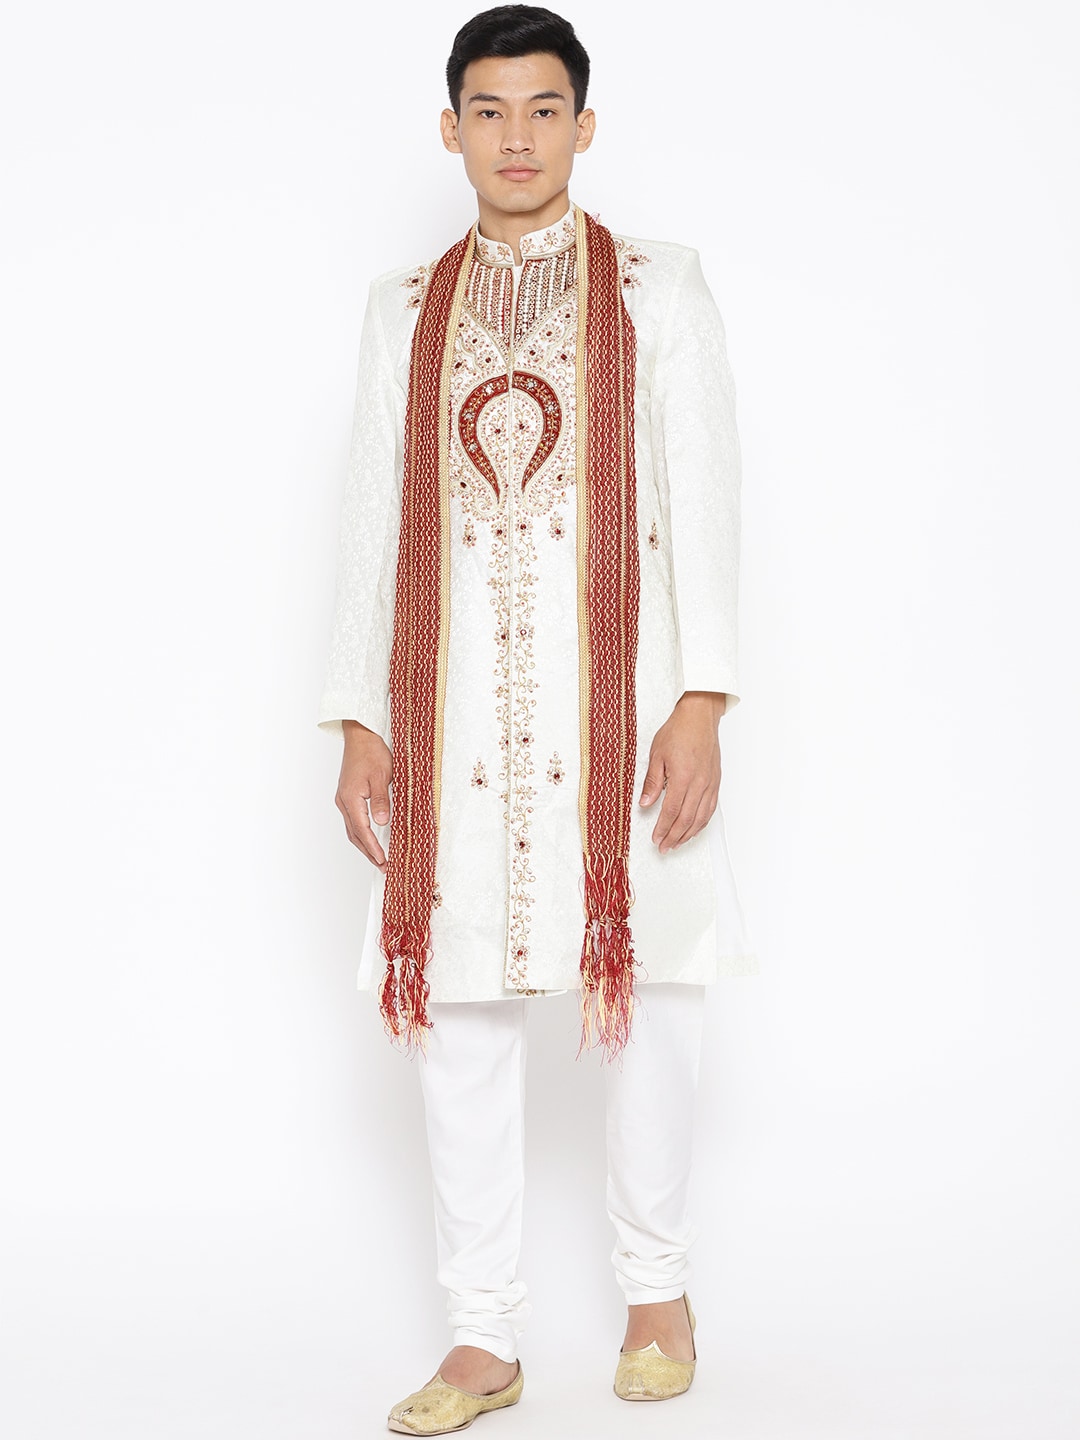 SG LEMAN Men Off-White & Maroon Embellished Raw Silk Sherwani